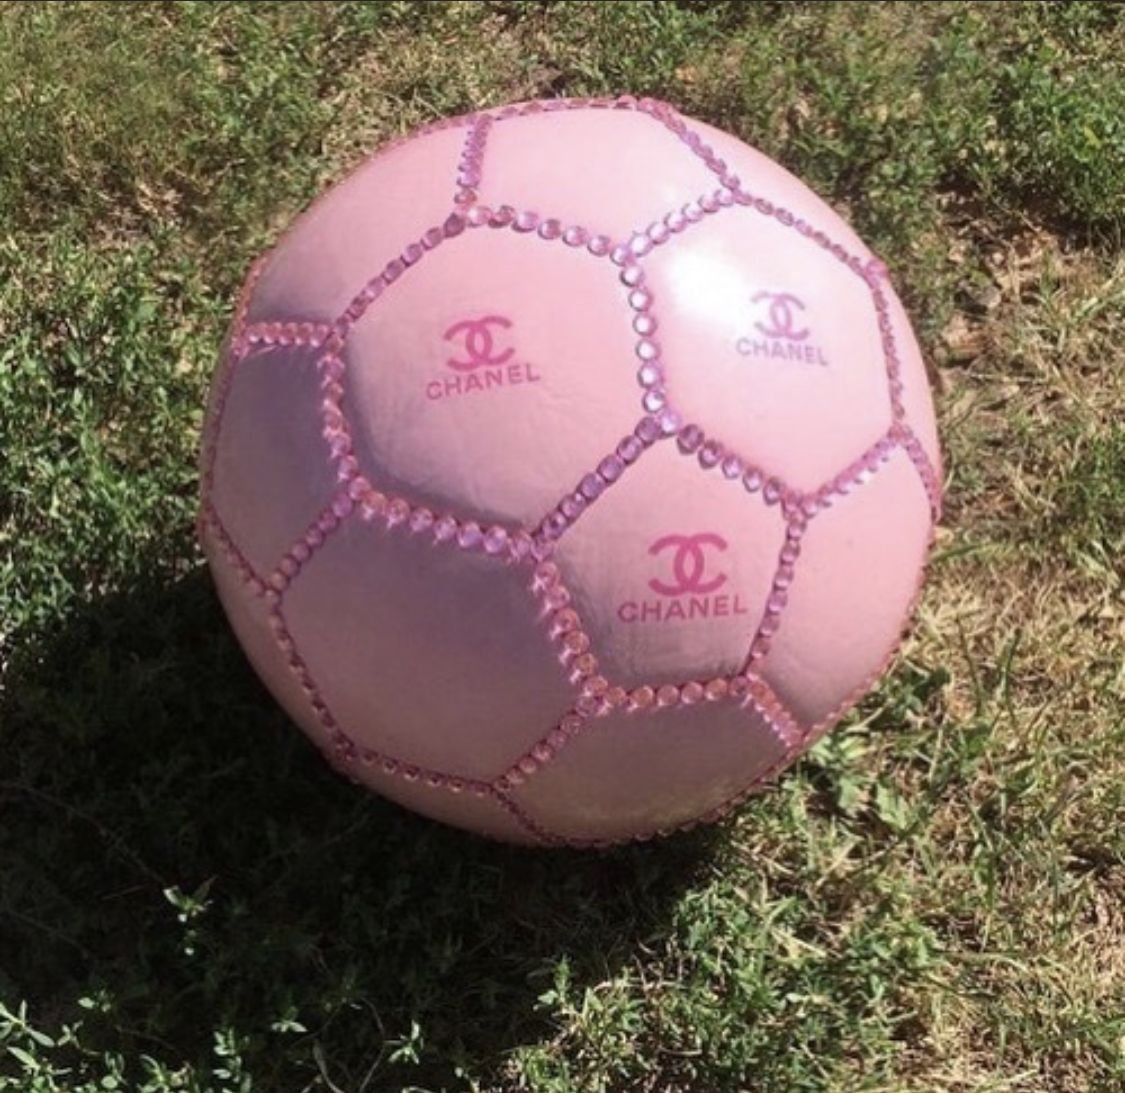 Розовый футбольный мяч